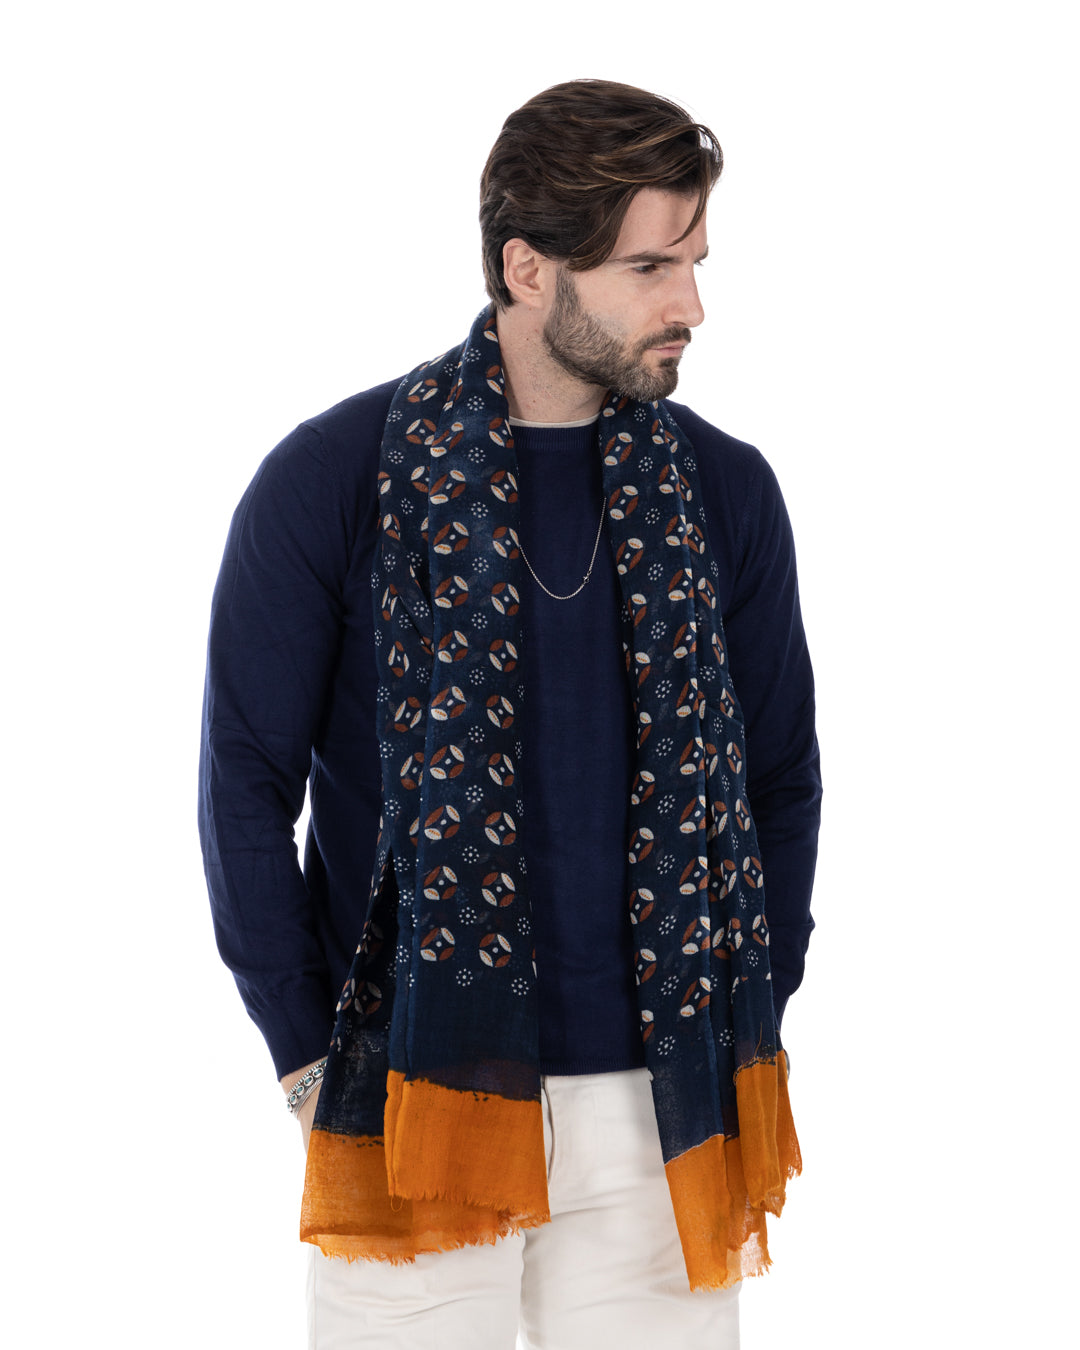 Meknes - blue wool scarf